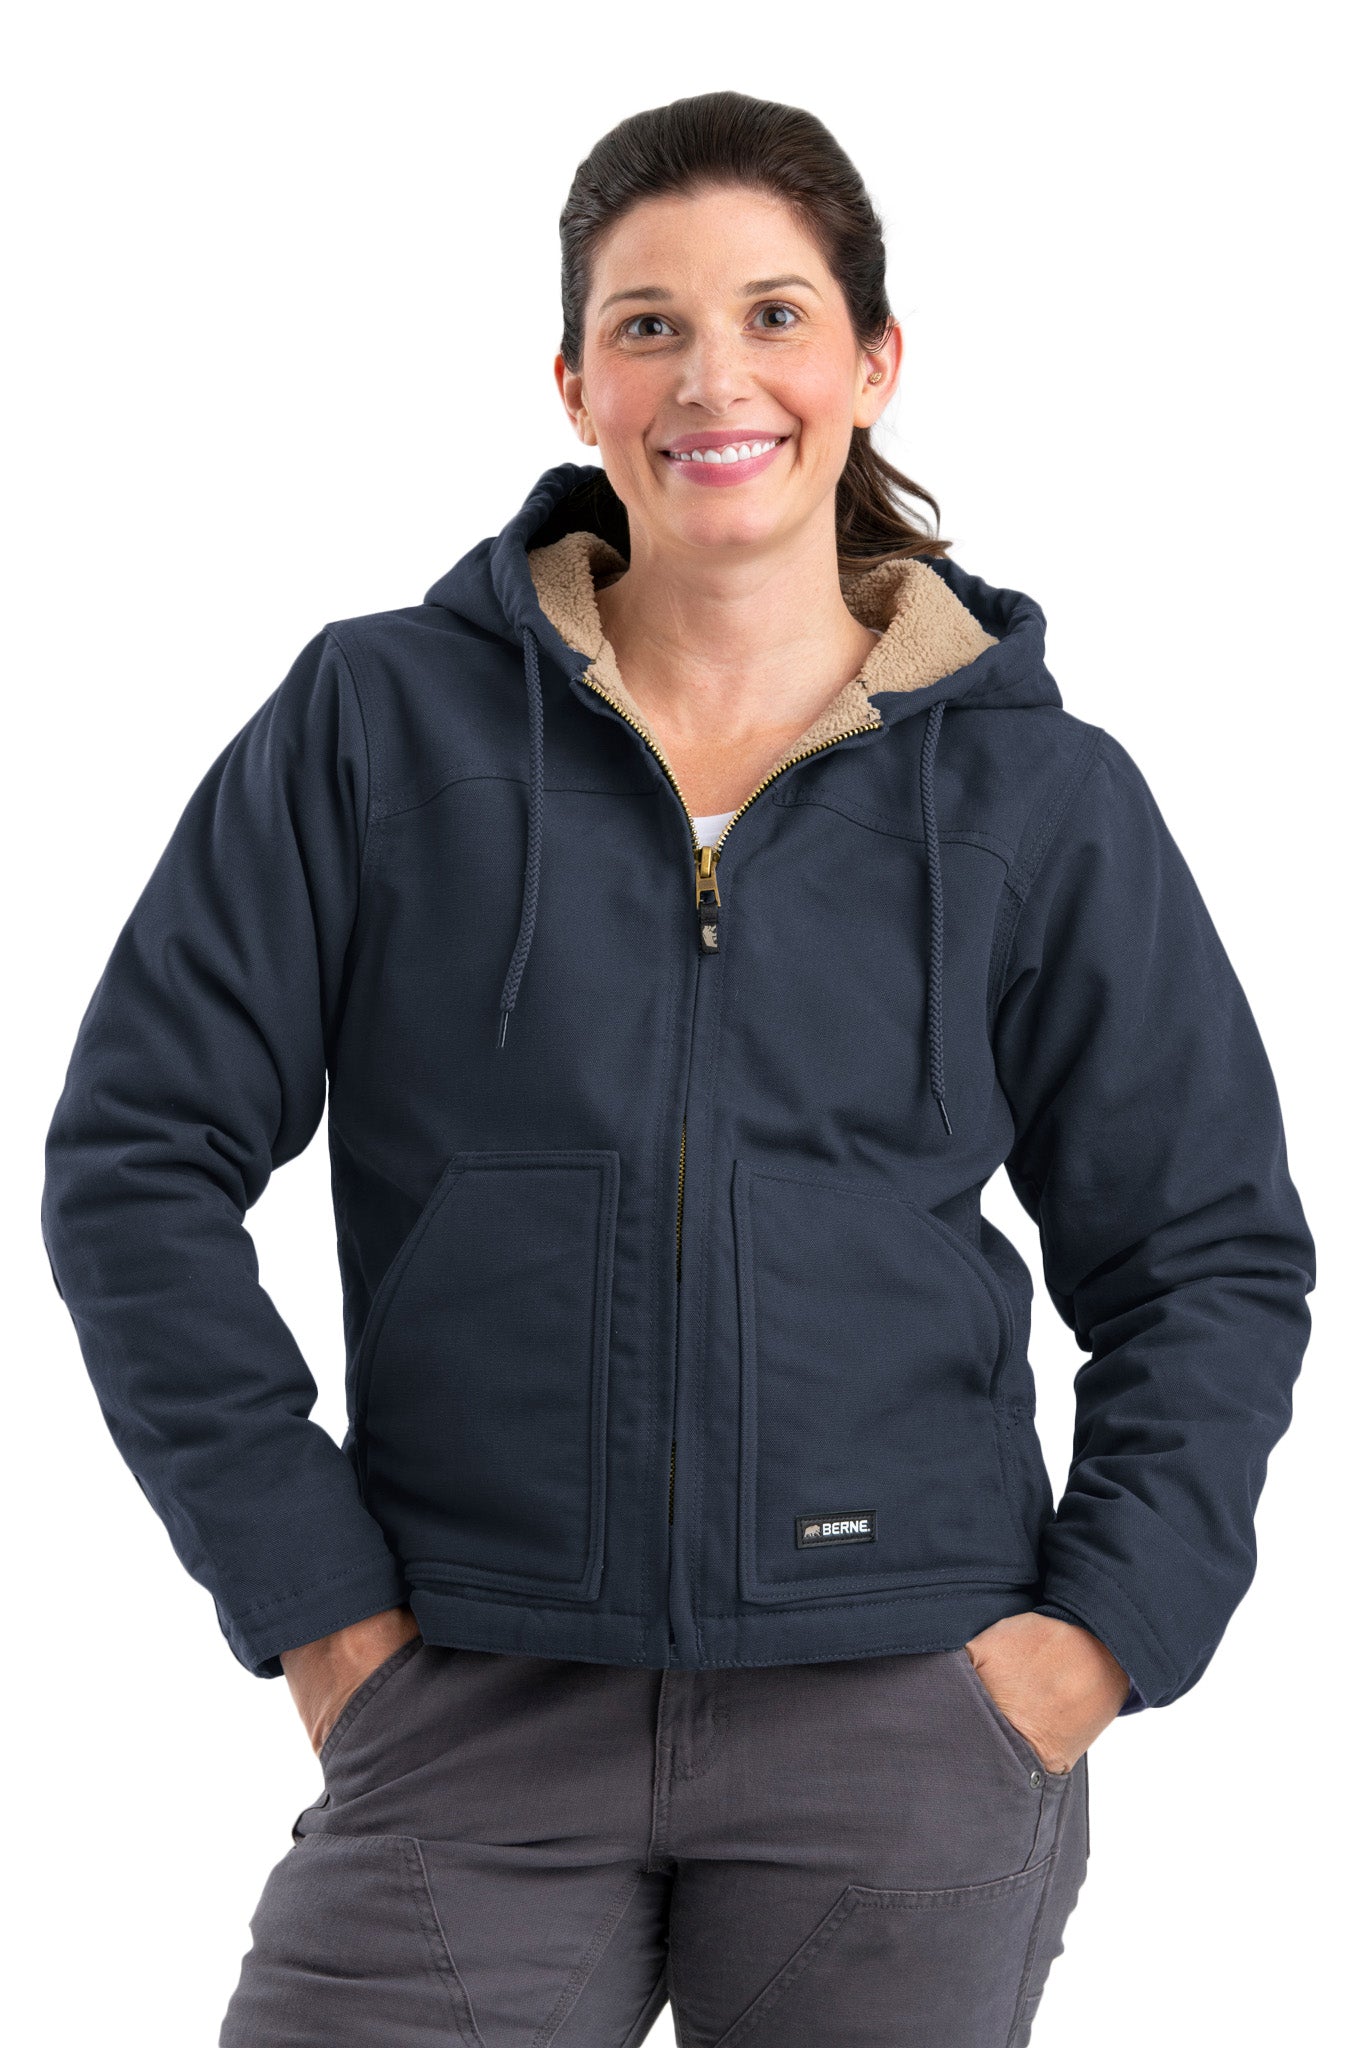 'Berne' Women's Softstone Duck Sherpa-Lined Hooded Jacket - Deep Ocean